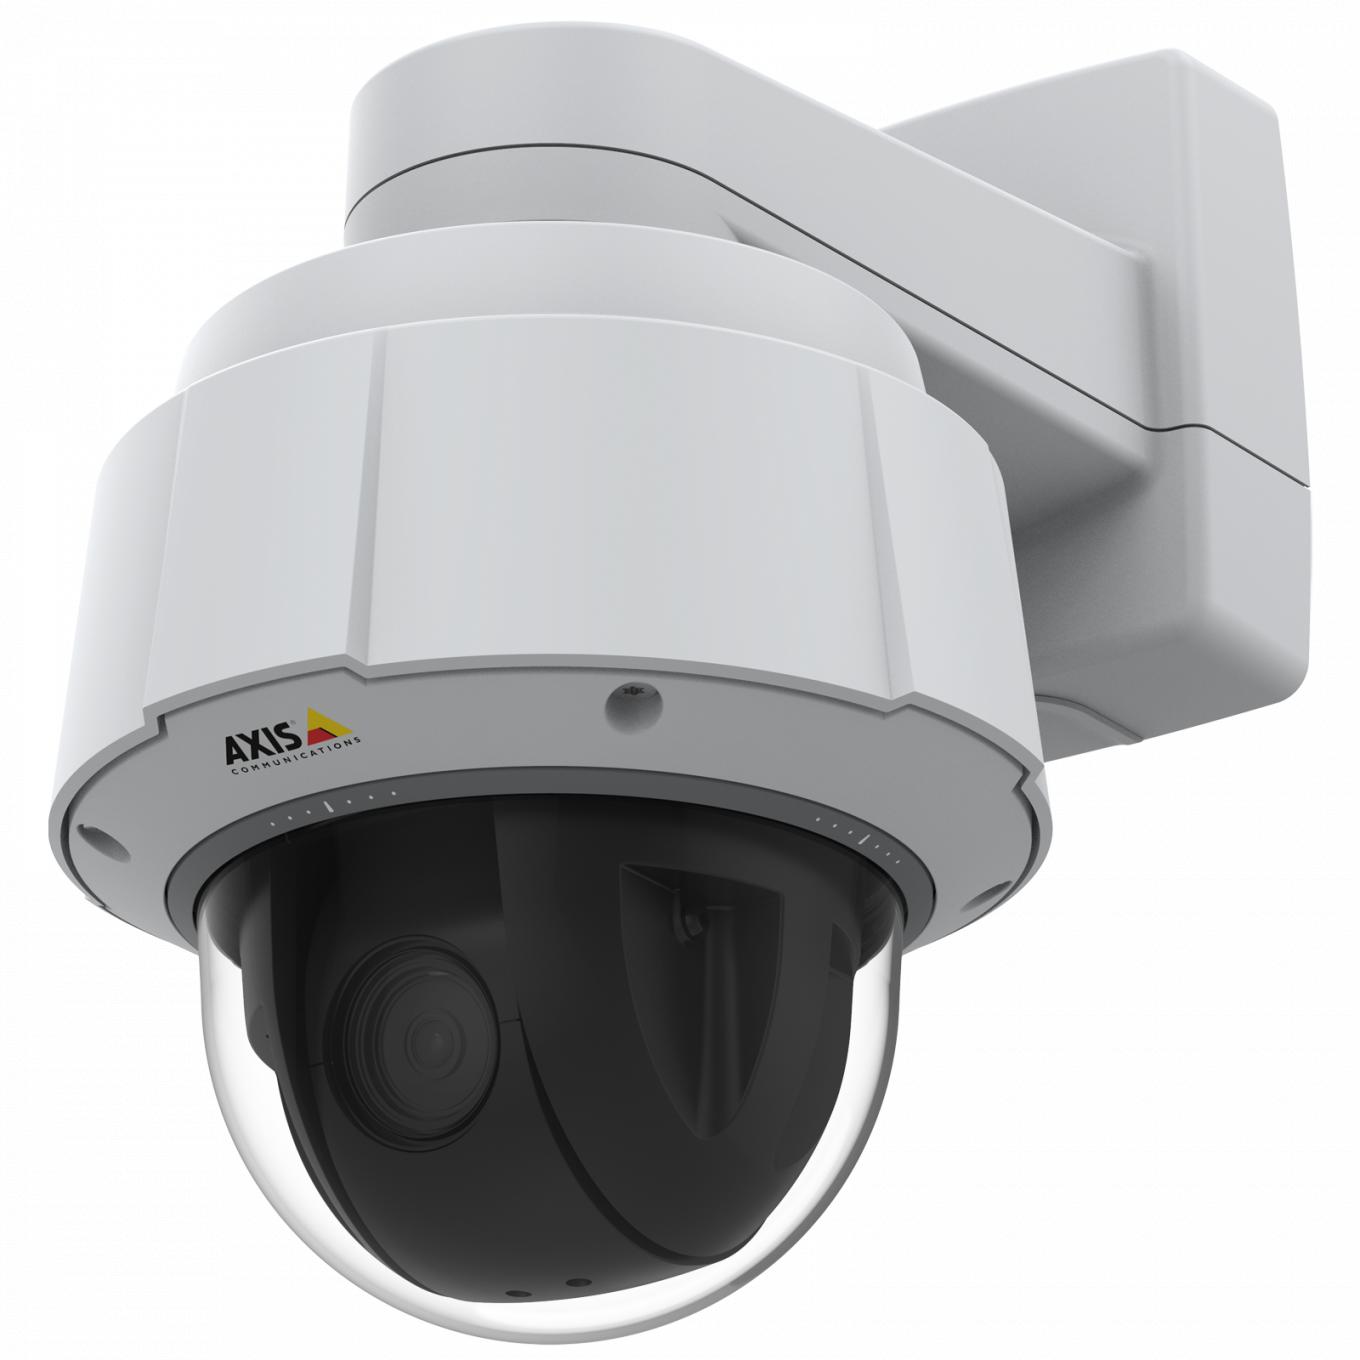 La Axis IP Camera Q6075-E est certifiée TPM, FIPS 140-2 niveau 2